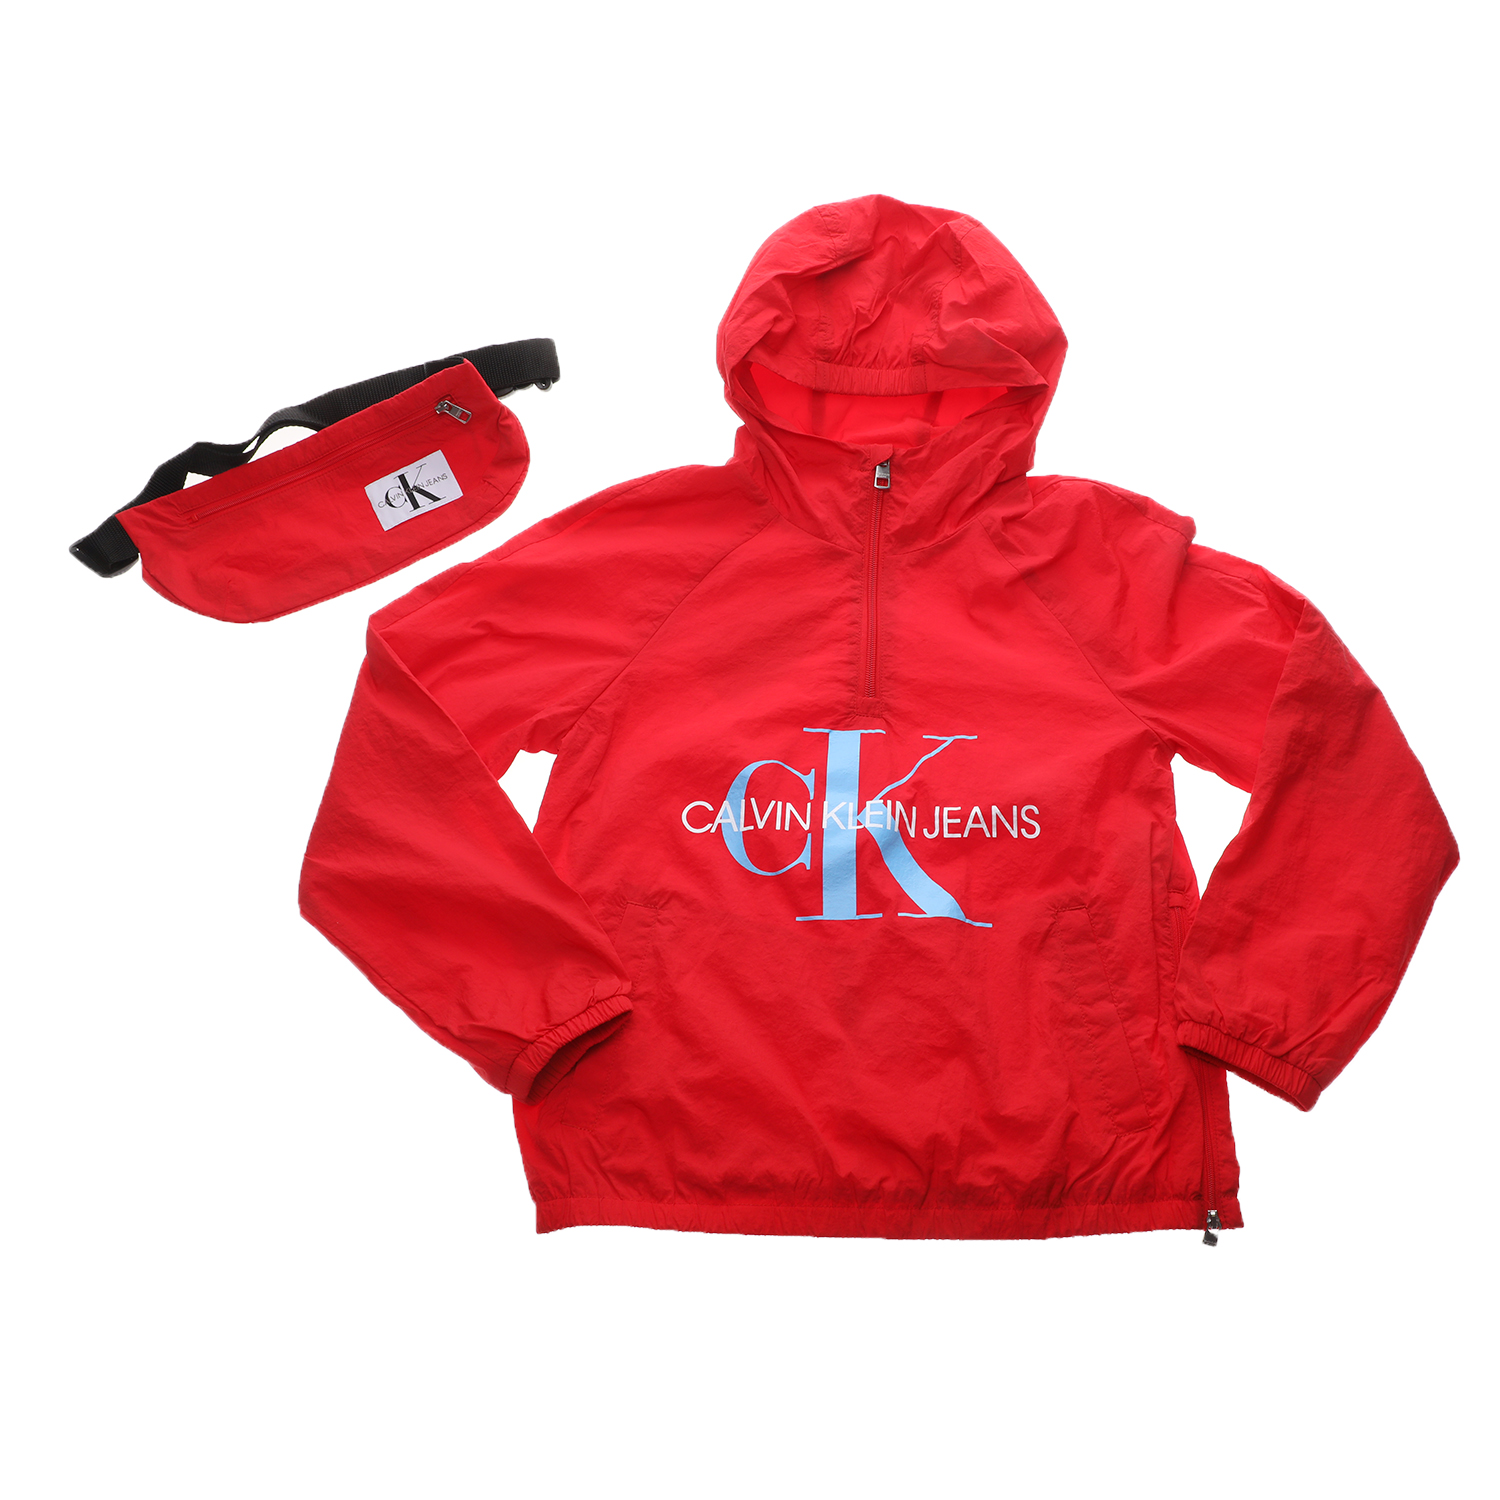 Παιδικά/Girls/Ρούχα/Πανωφόρια CALVIN KLEIN JEANS KIDS - Παιδικό αντιανεμικό jacket και τσαντάκι CALVIN KLEIN JEANS KIDS κόκκινο